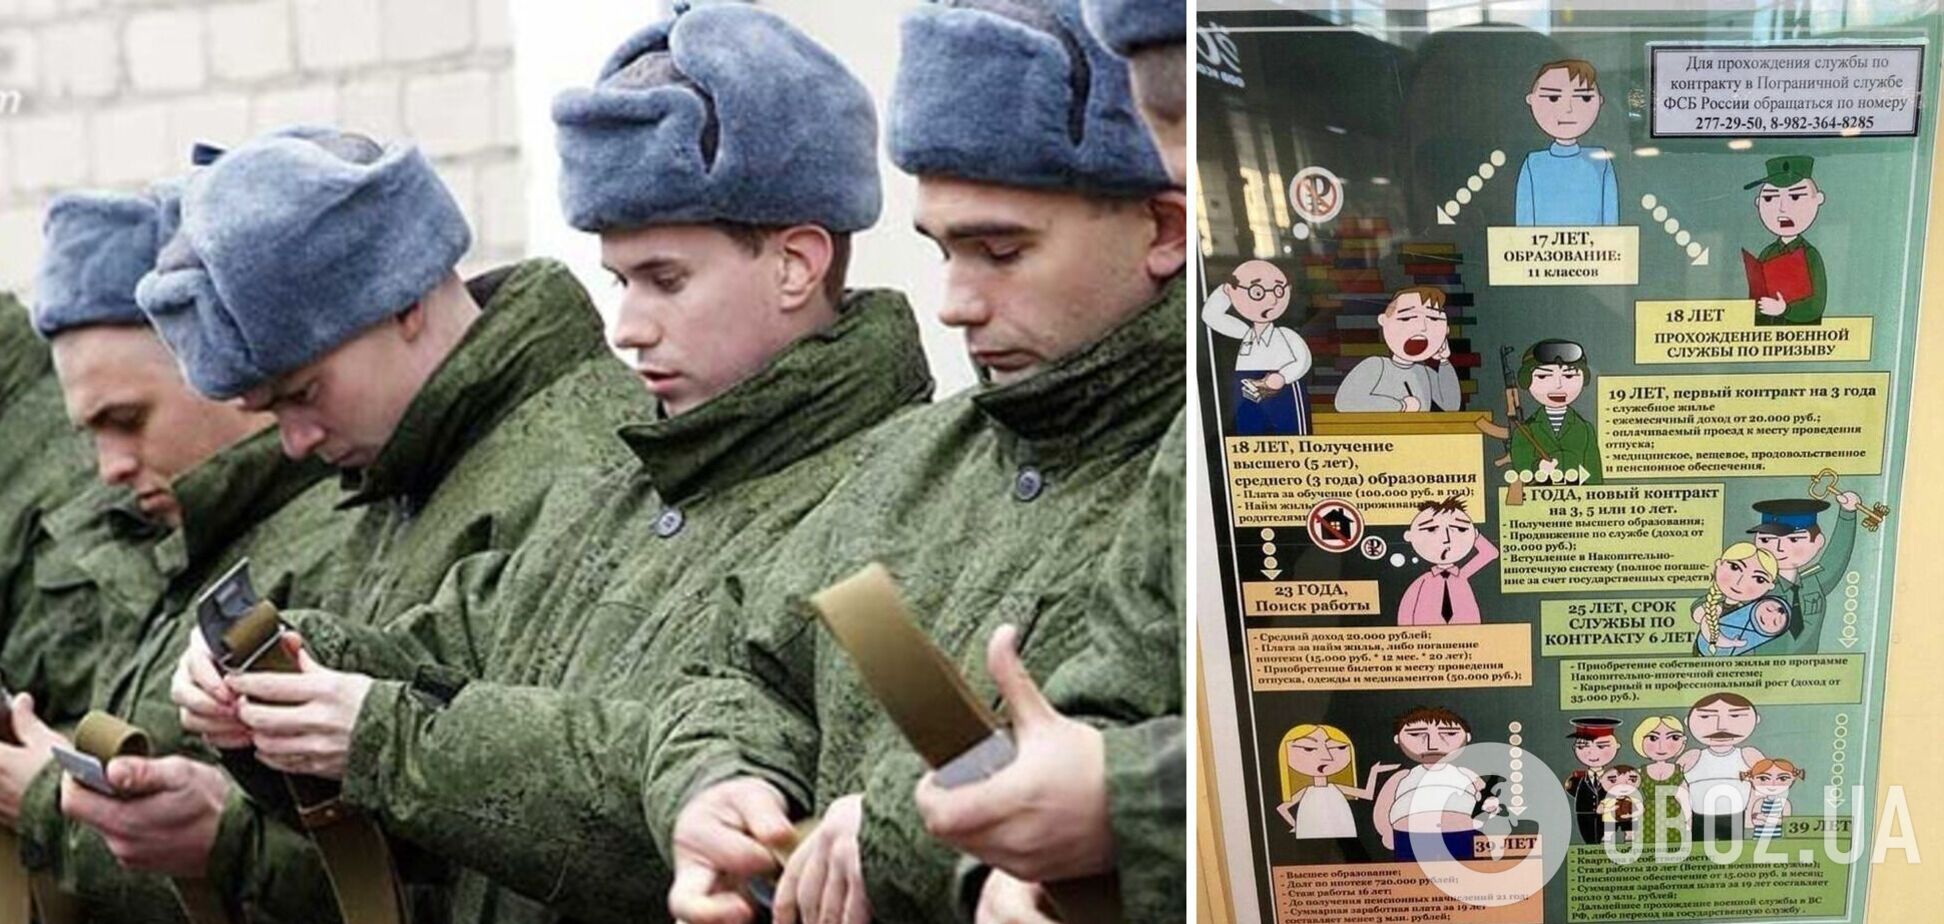 В России пропагандисты доходчиво объяснили бессмысленность высшего образования: сразу в армию